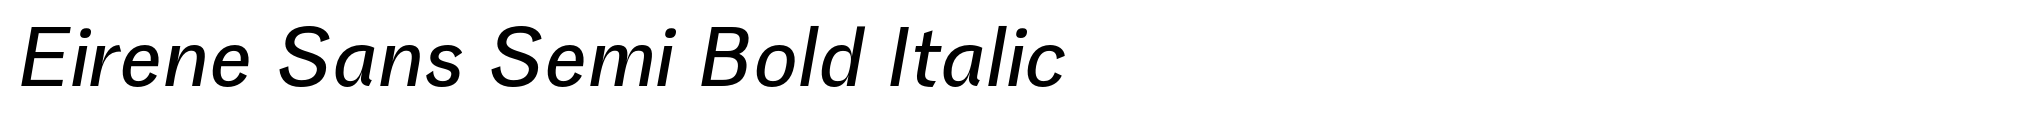 Eirene Sans Semi Bold Italic image